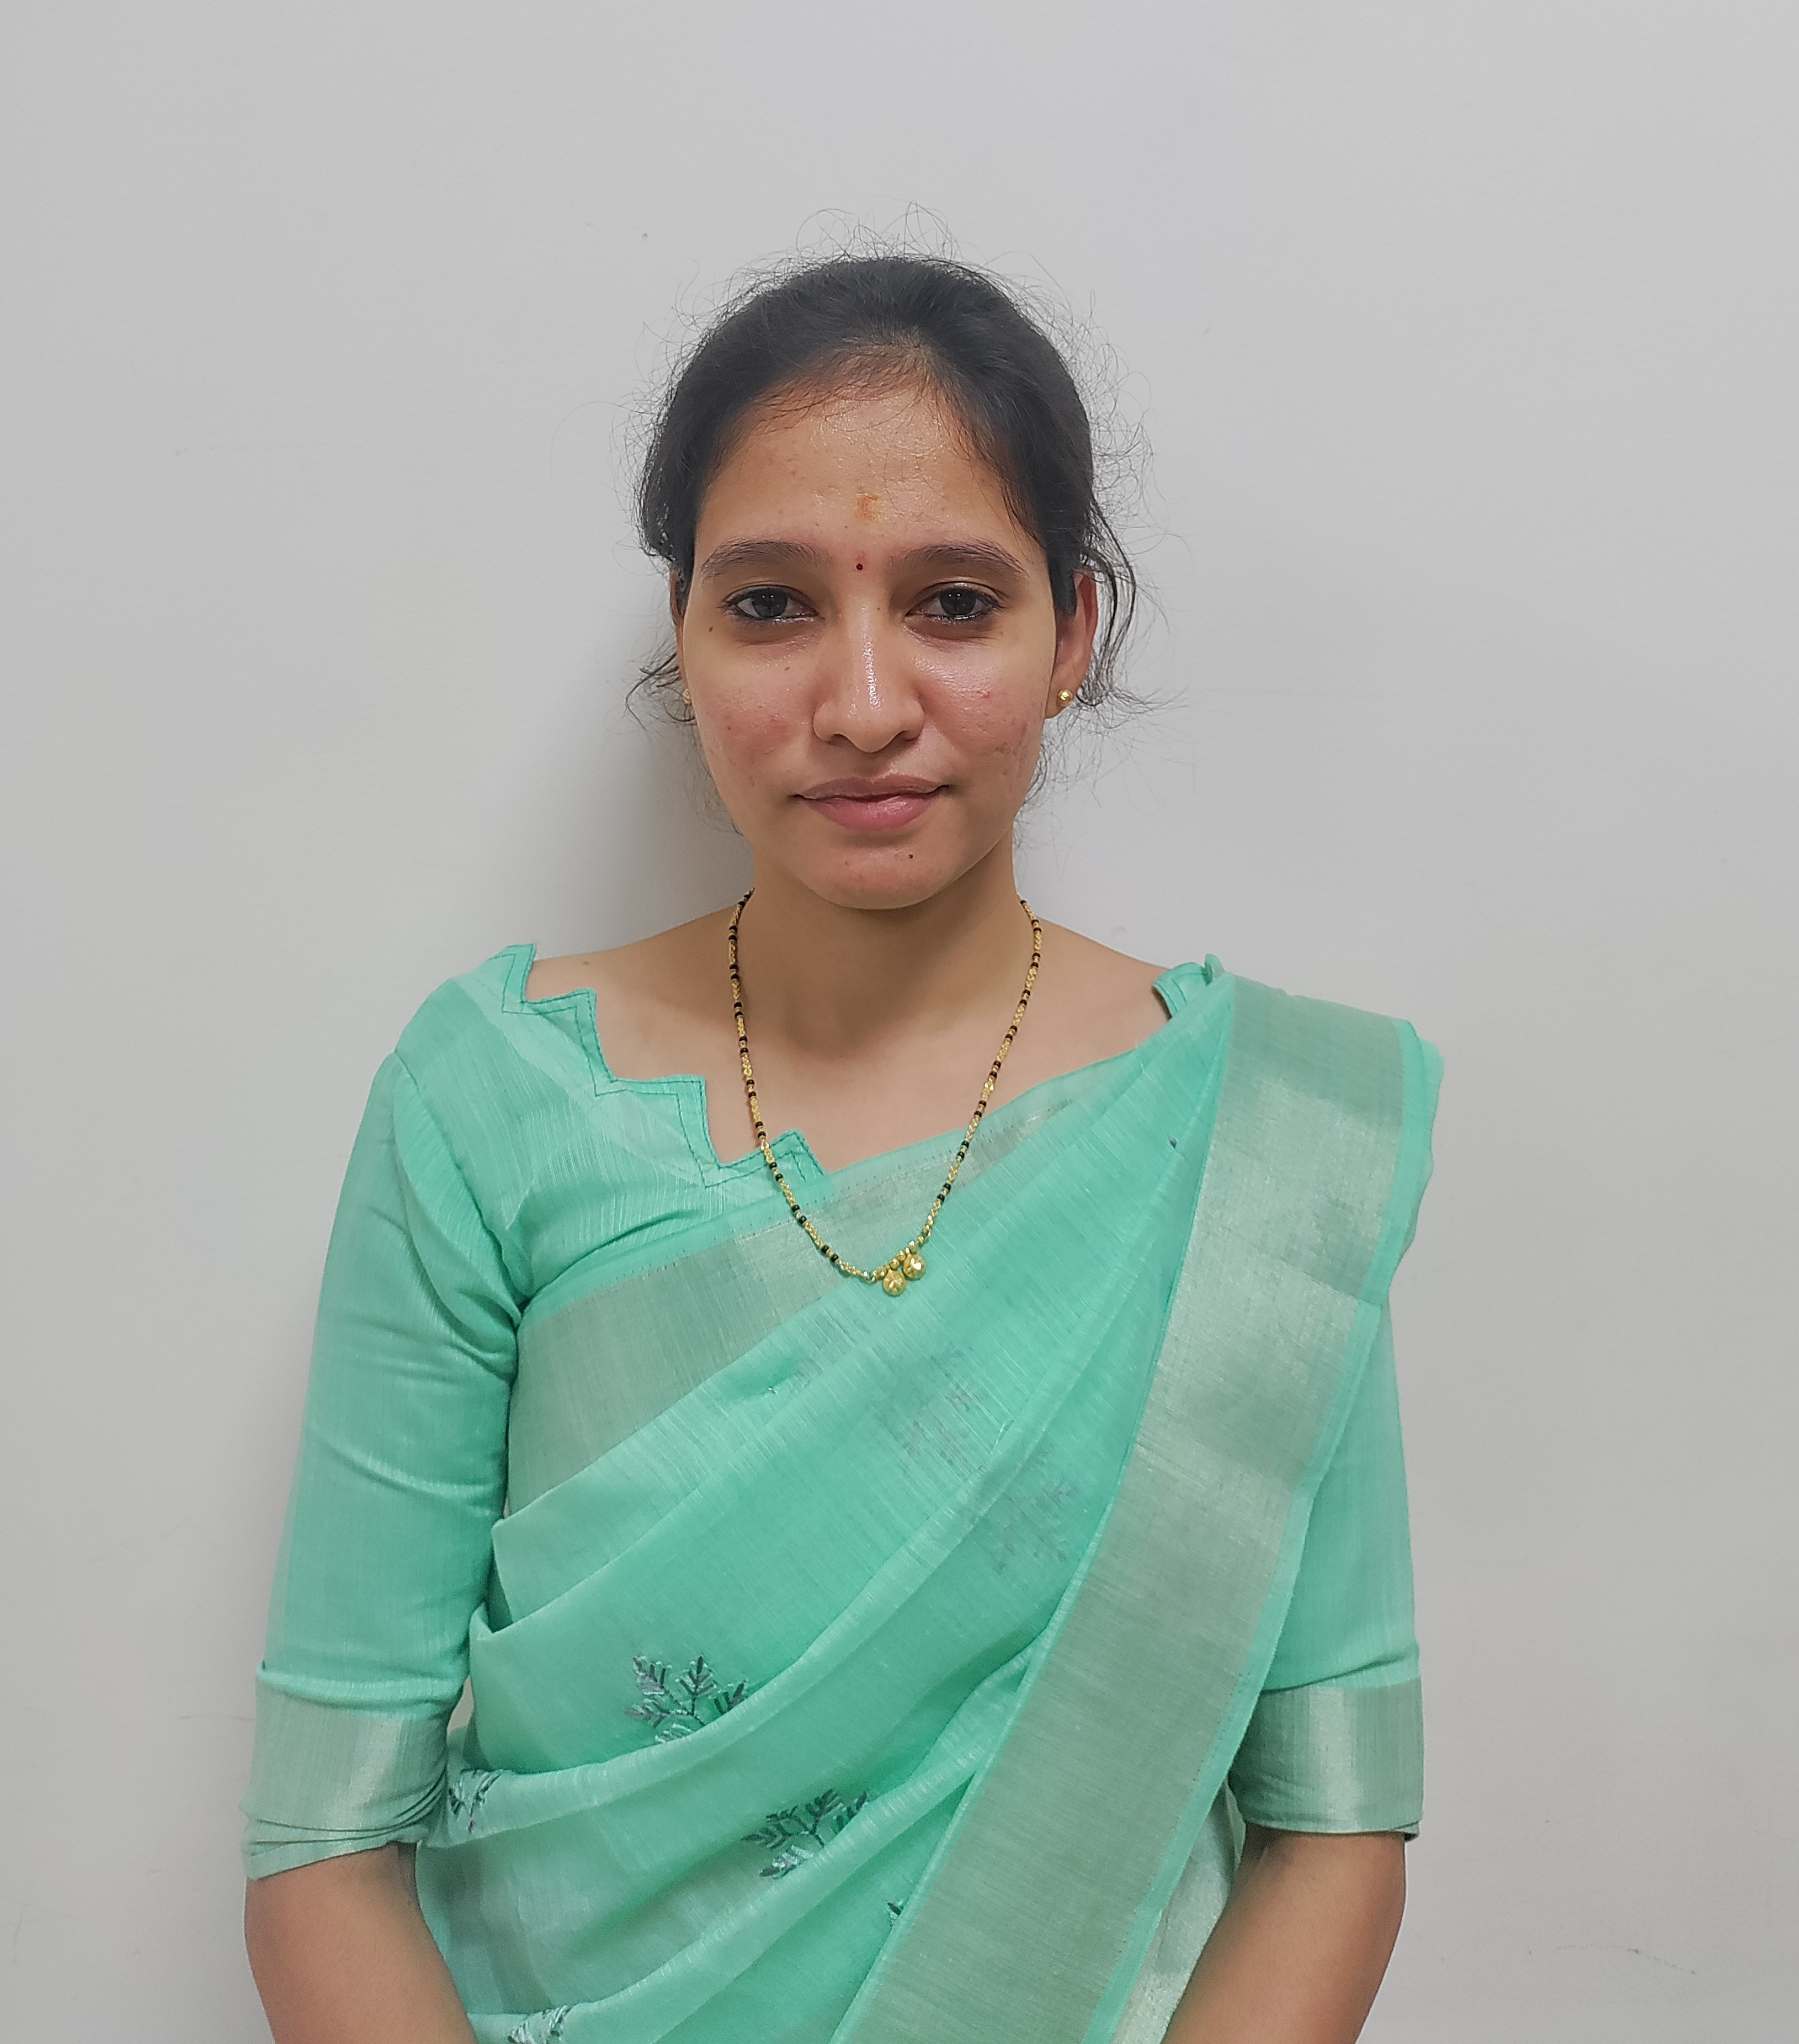 Ms. Chaitra M.Doddagowdar